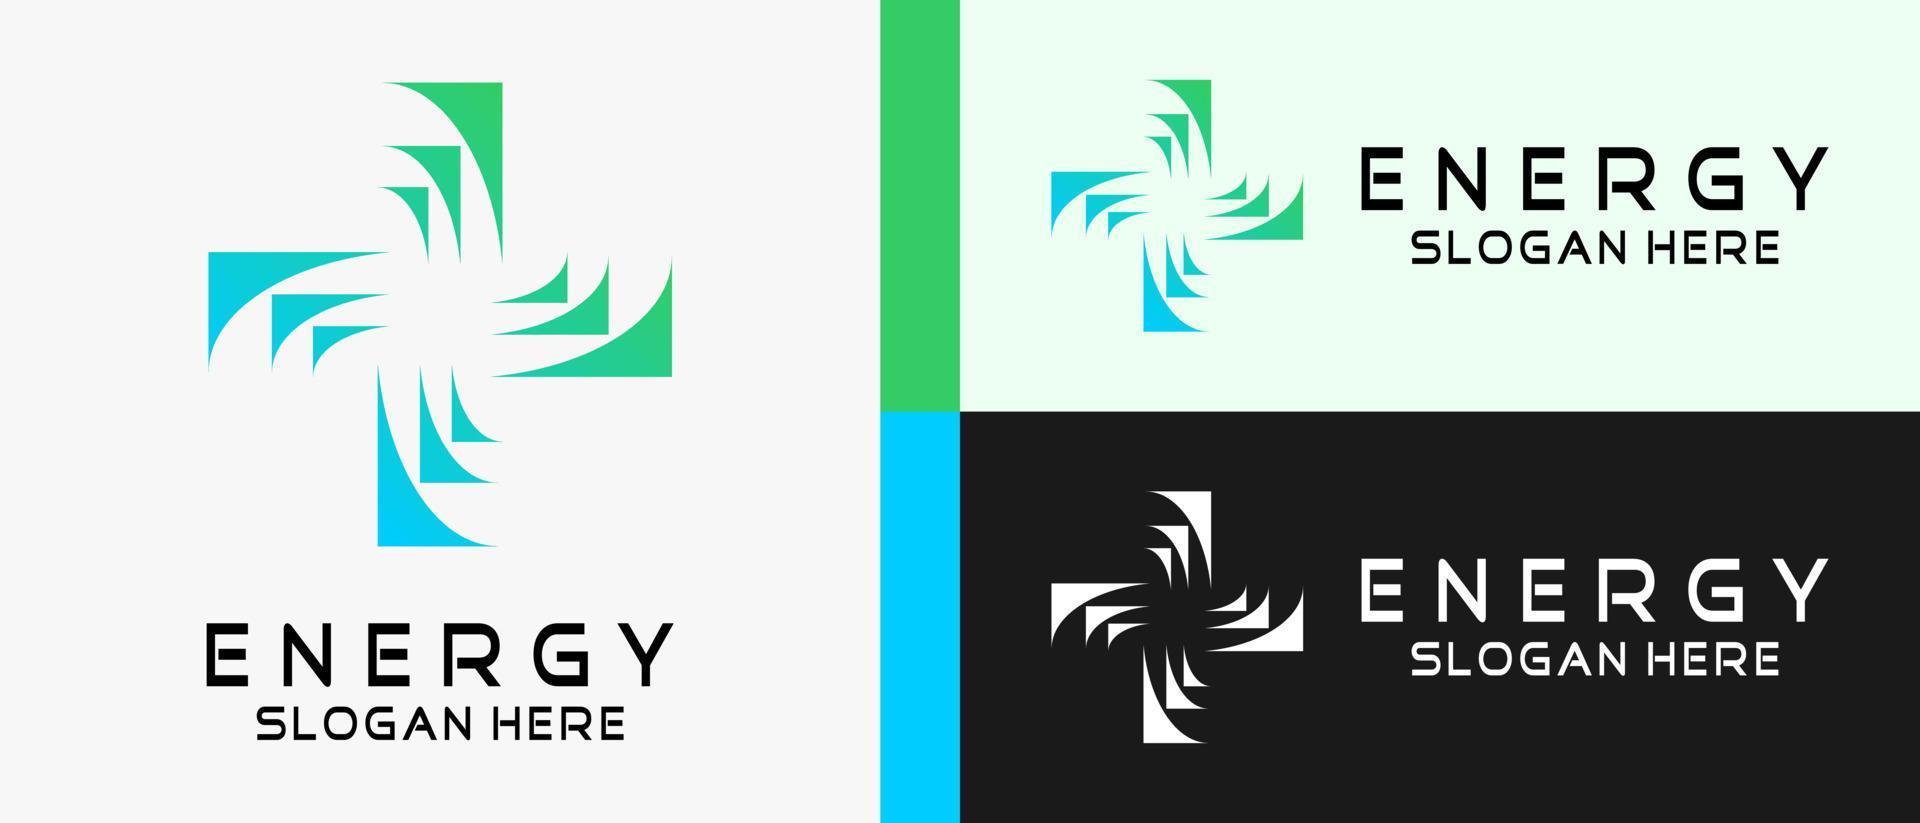 plantilla de diseño de logotipo de energía con un concepto creativo en forma de signo más o cruz. ilustración de logotipo de vector premium